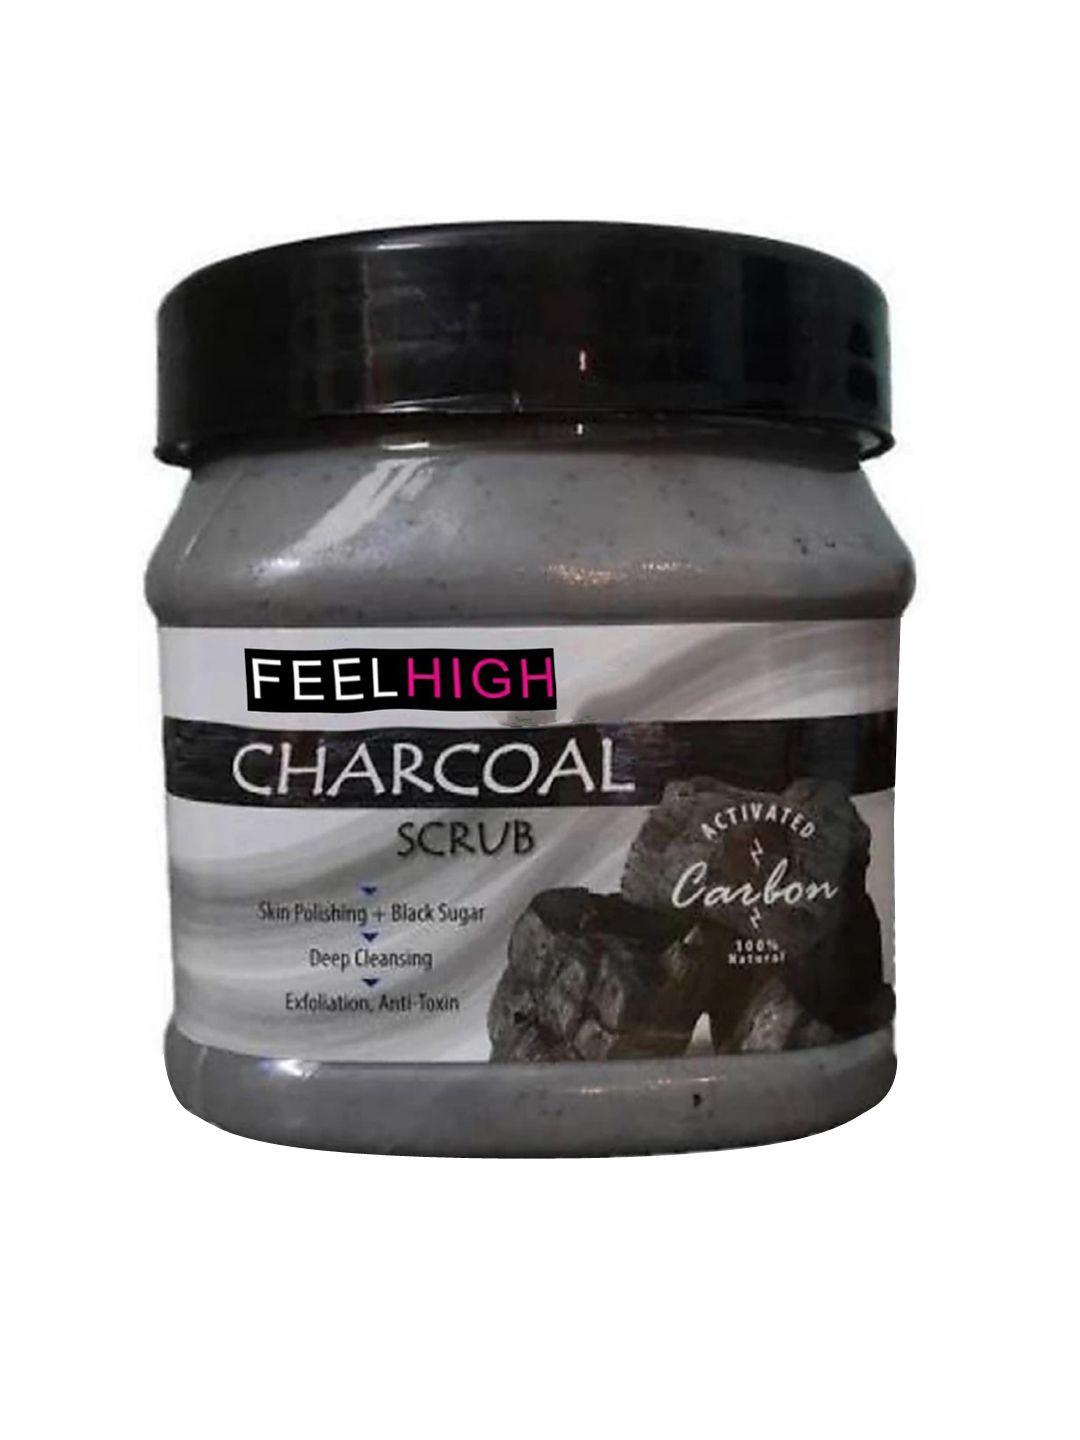 feelhigh charcoal face & body scrub with black sugar - 500 ml